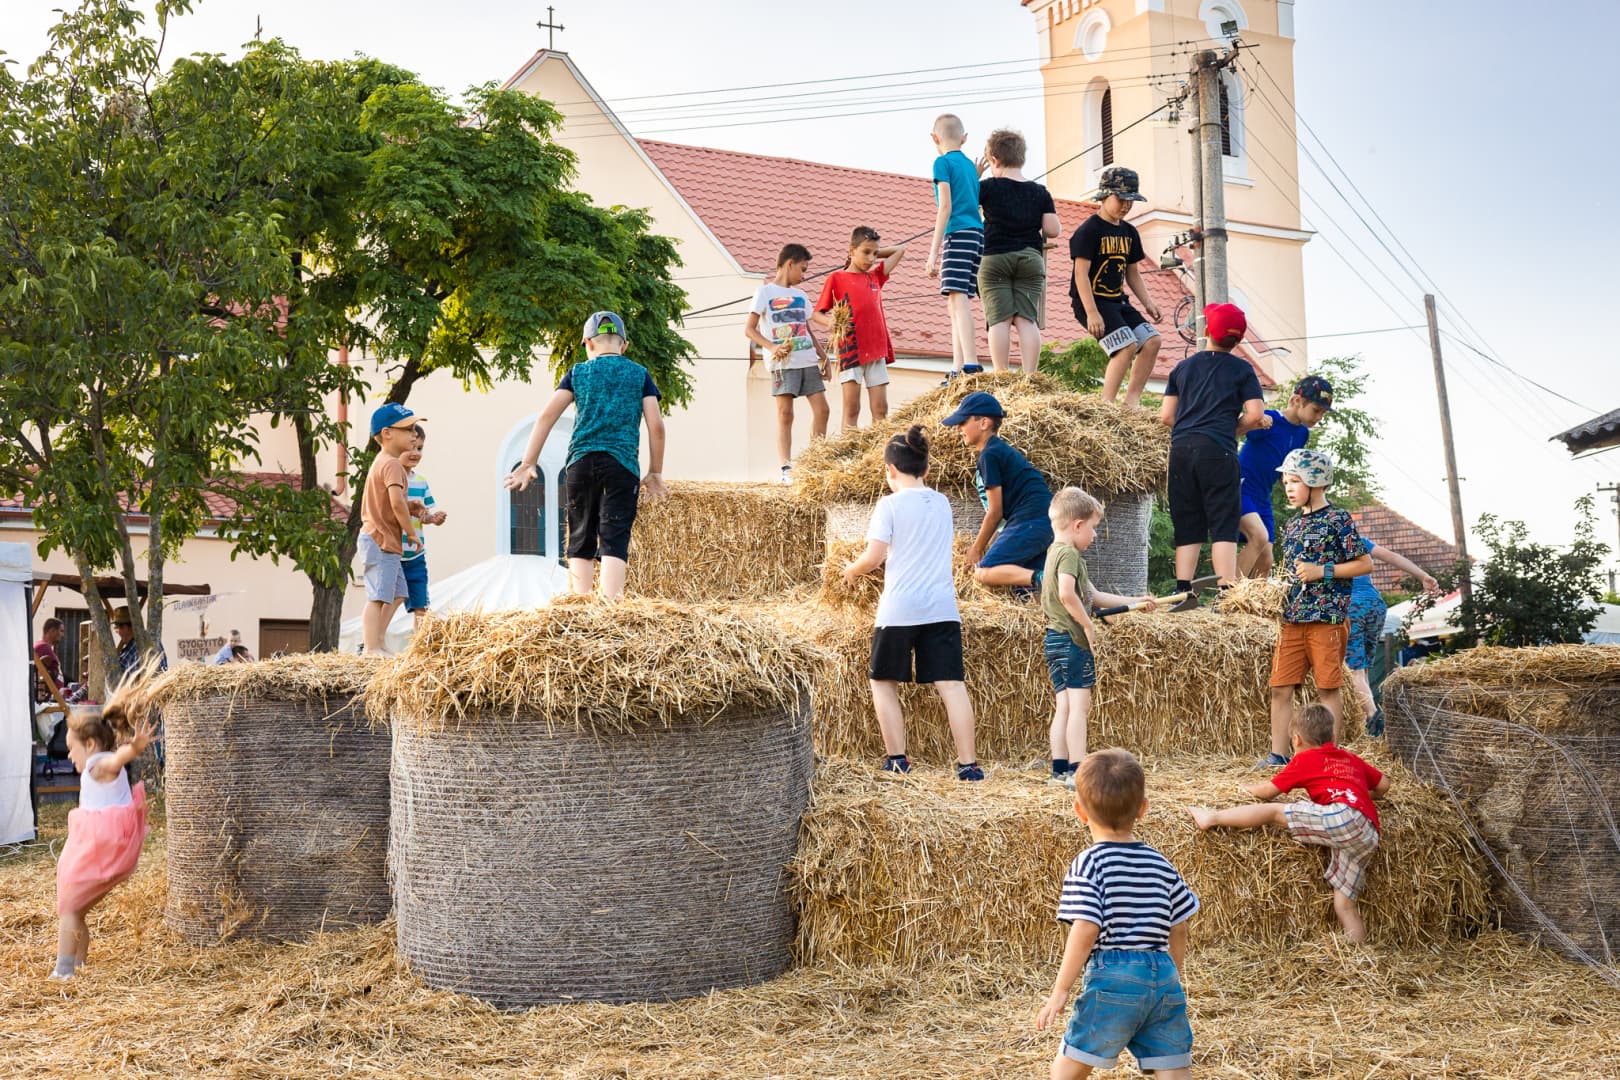 Így zajlott a XVI. Alsószeli Jurtanapok kulturális fesztivál és nyári szabadegyetem (FOTÓK)